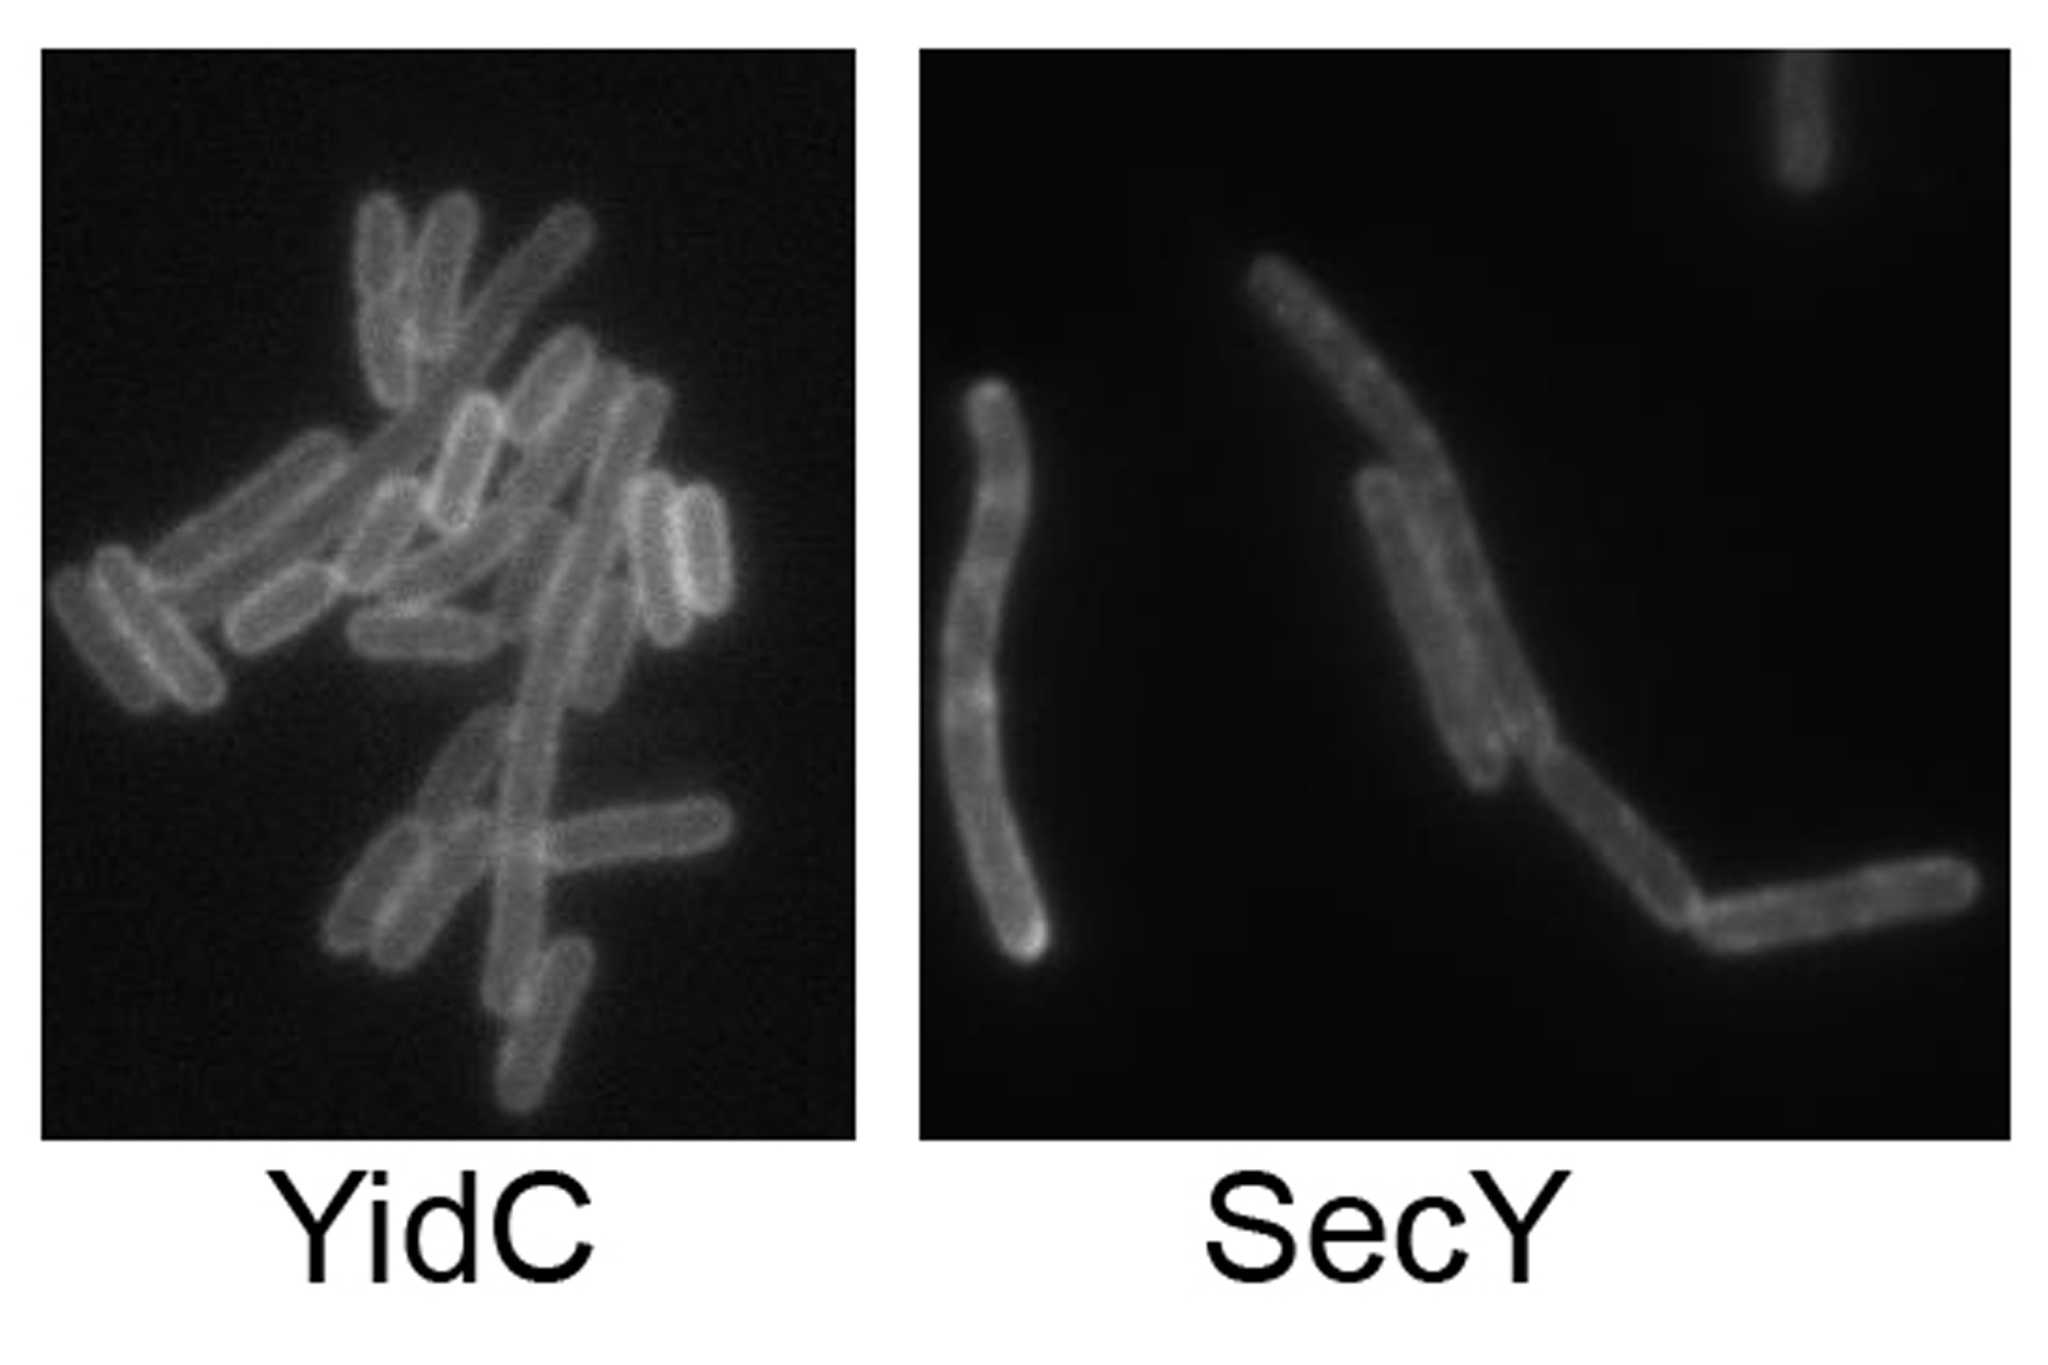 Links: E.-coli-Zellen, in denen YidC durch einen Fluoreszenz-Farbstoff markiert wurde. Rechts: E.-coli-Zellen, in denen die Sec-Translokase markiert wurde. Während YidC gleichmäßig in der gesamten Membran von E. coli verteilt ist, zeigt die Sec-Translokas